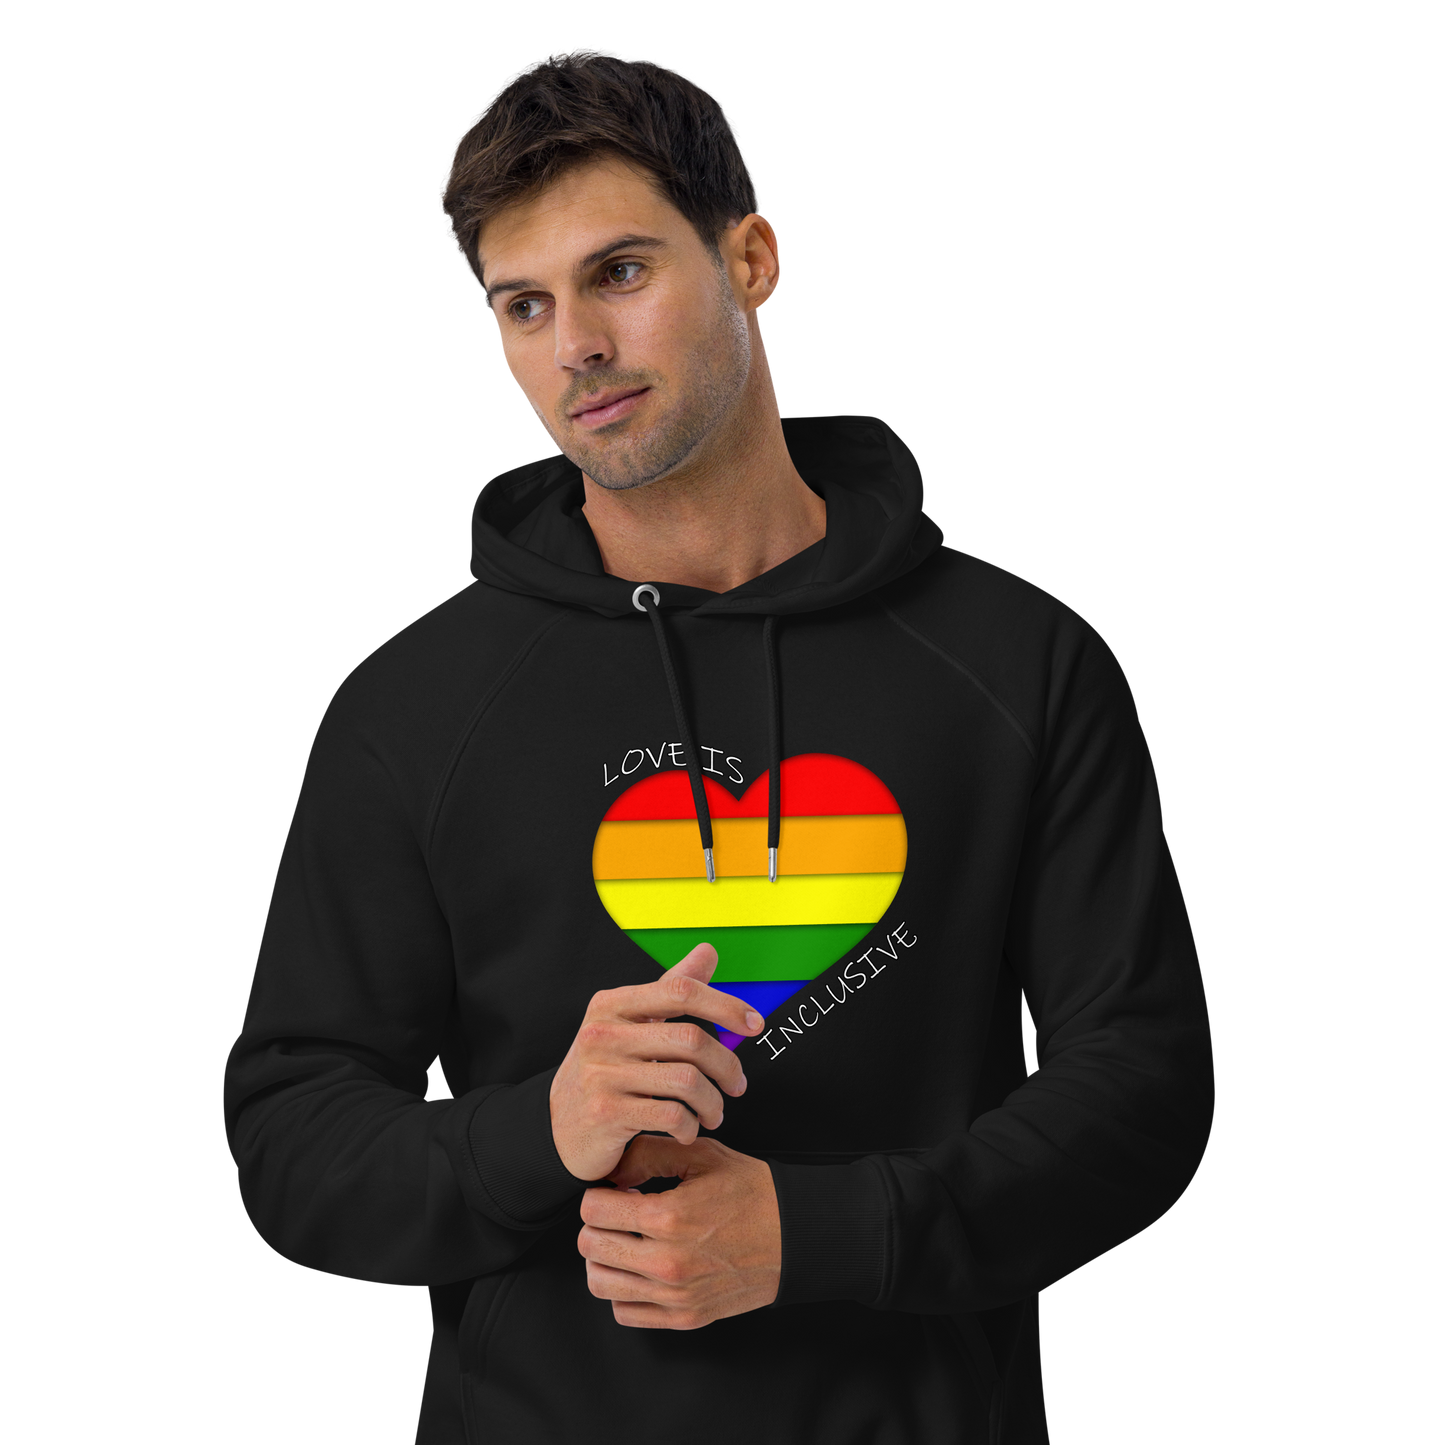 Unisex eco raglan hoodie Inclusive Love Pride Hoodie Neduz Designs